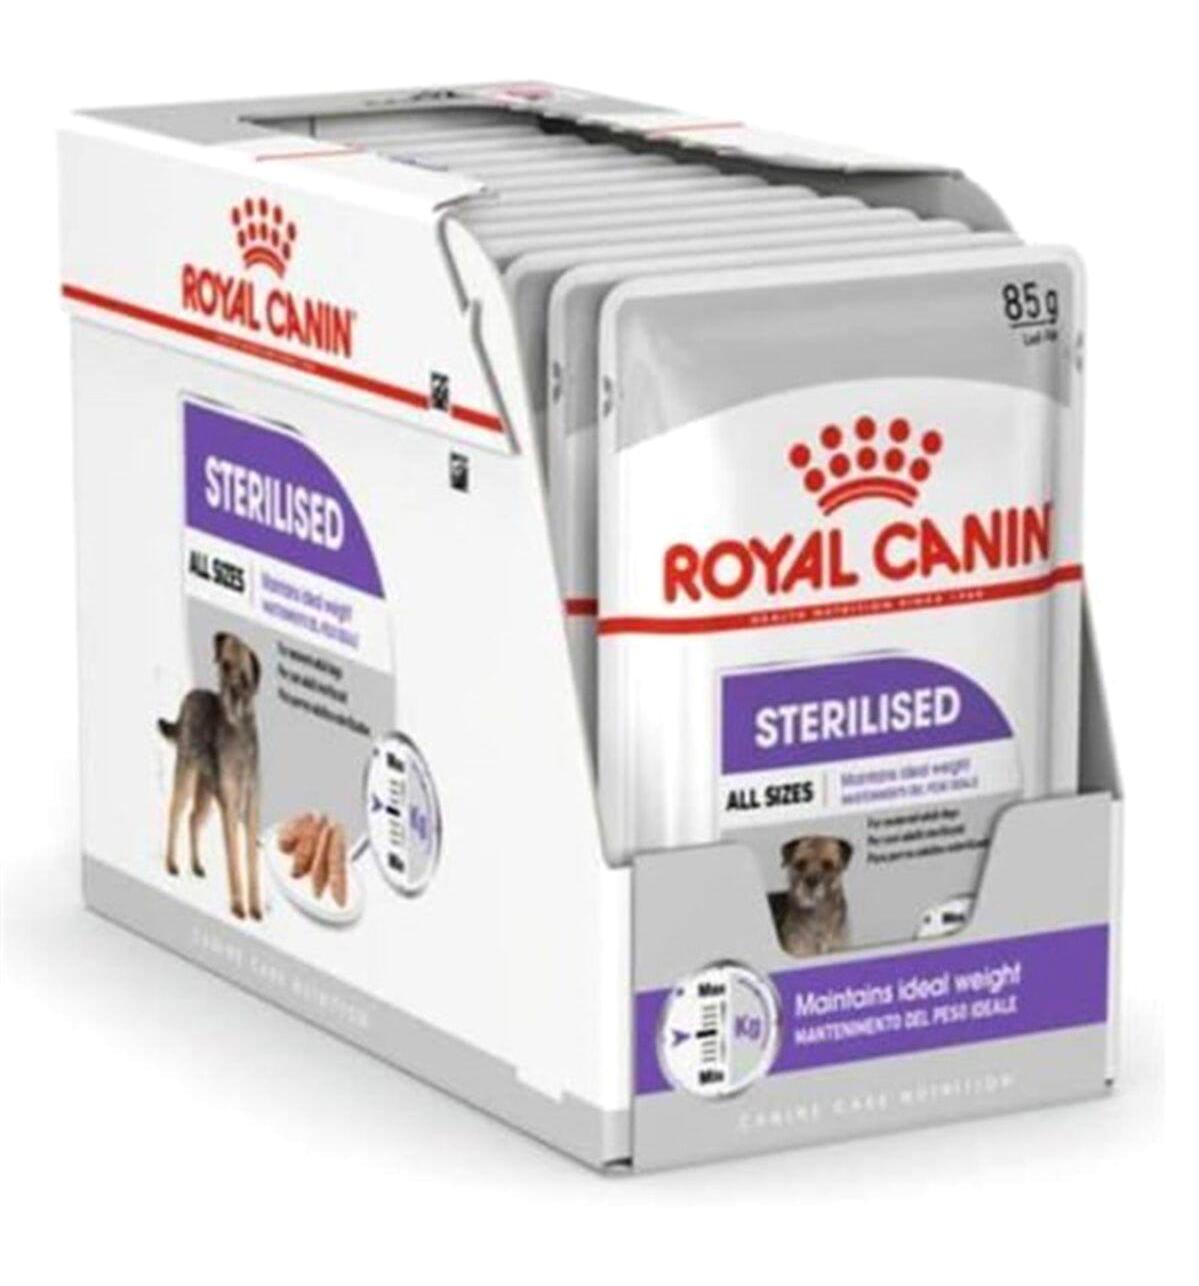 Royal Canin Sterılısed Tavuklu Yetişkin Yaş Köpek Maması 85 gr 12'li